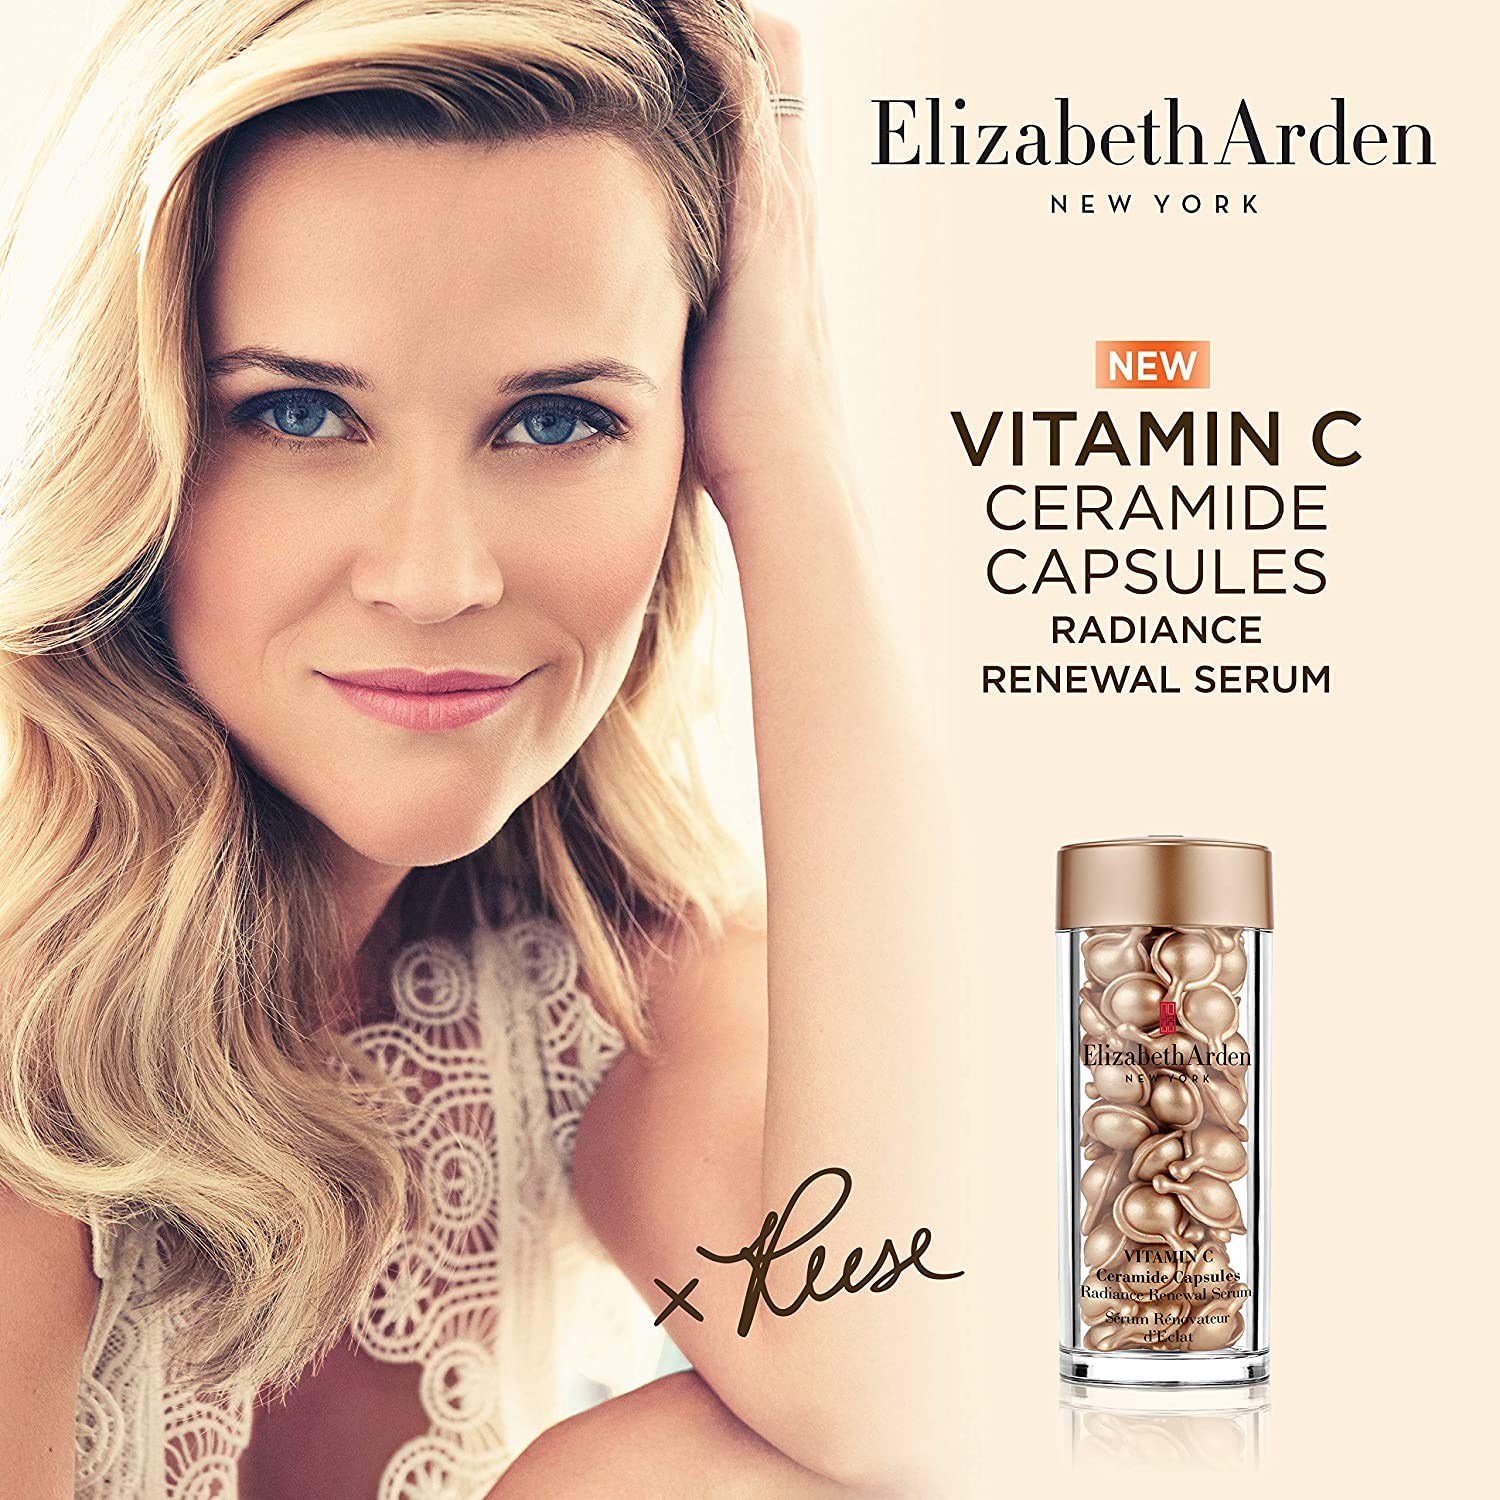 Elizabeth Arden Vitamin C Ceramide Capsules Radiance Renewal Serum 7 capsule